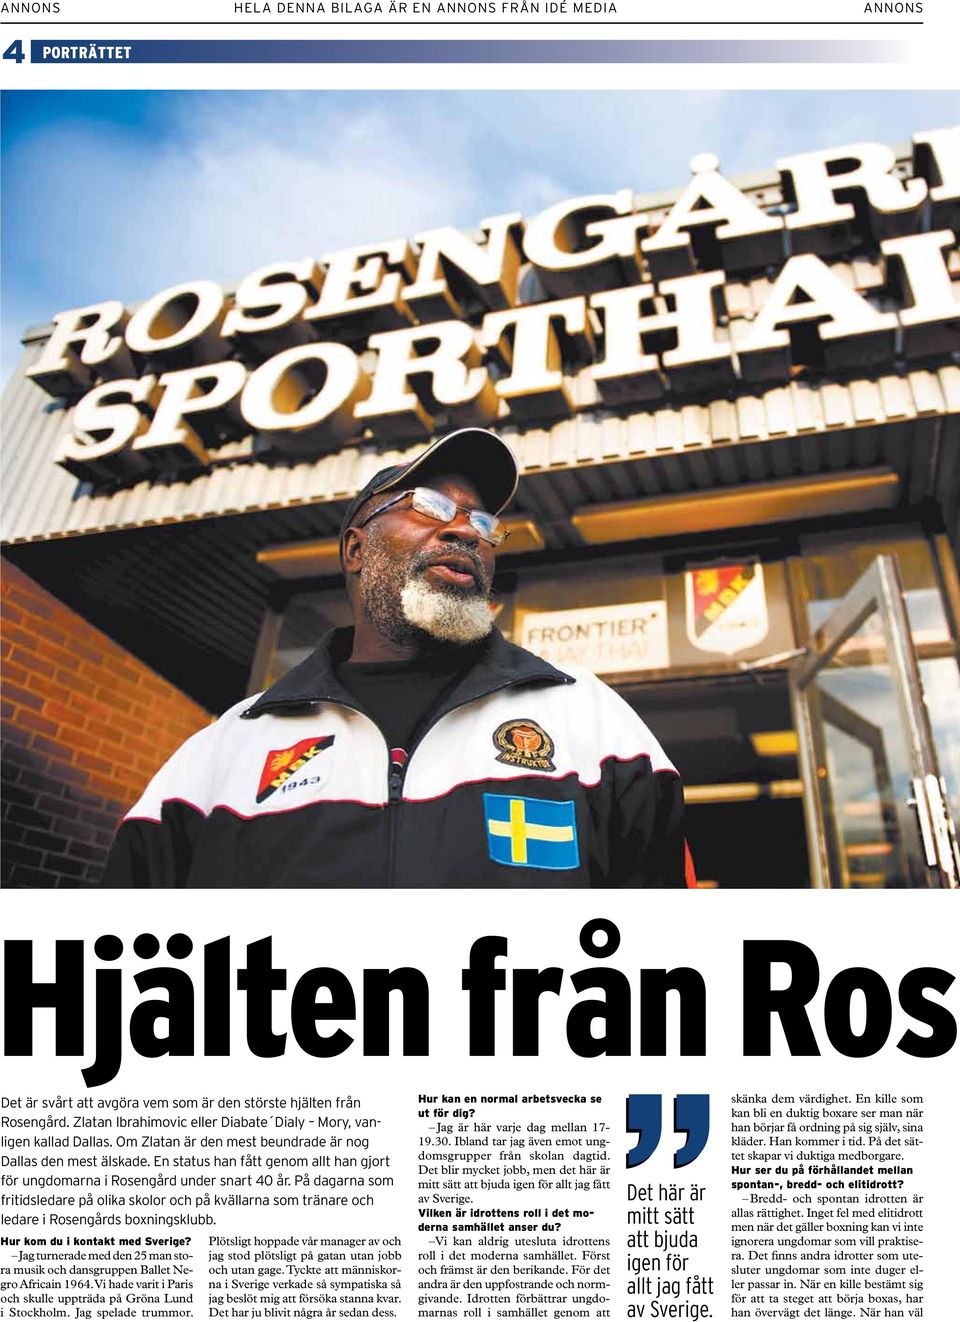 På dagarna som fritidsledare på olika skolor och på kvällarna som tränare och ledare i Rosengårds boxningsklubb. Hur kom du i kontakt med Sverige?